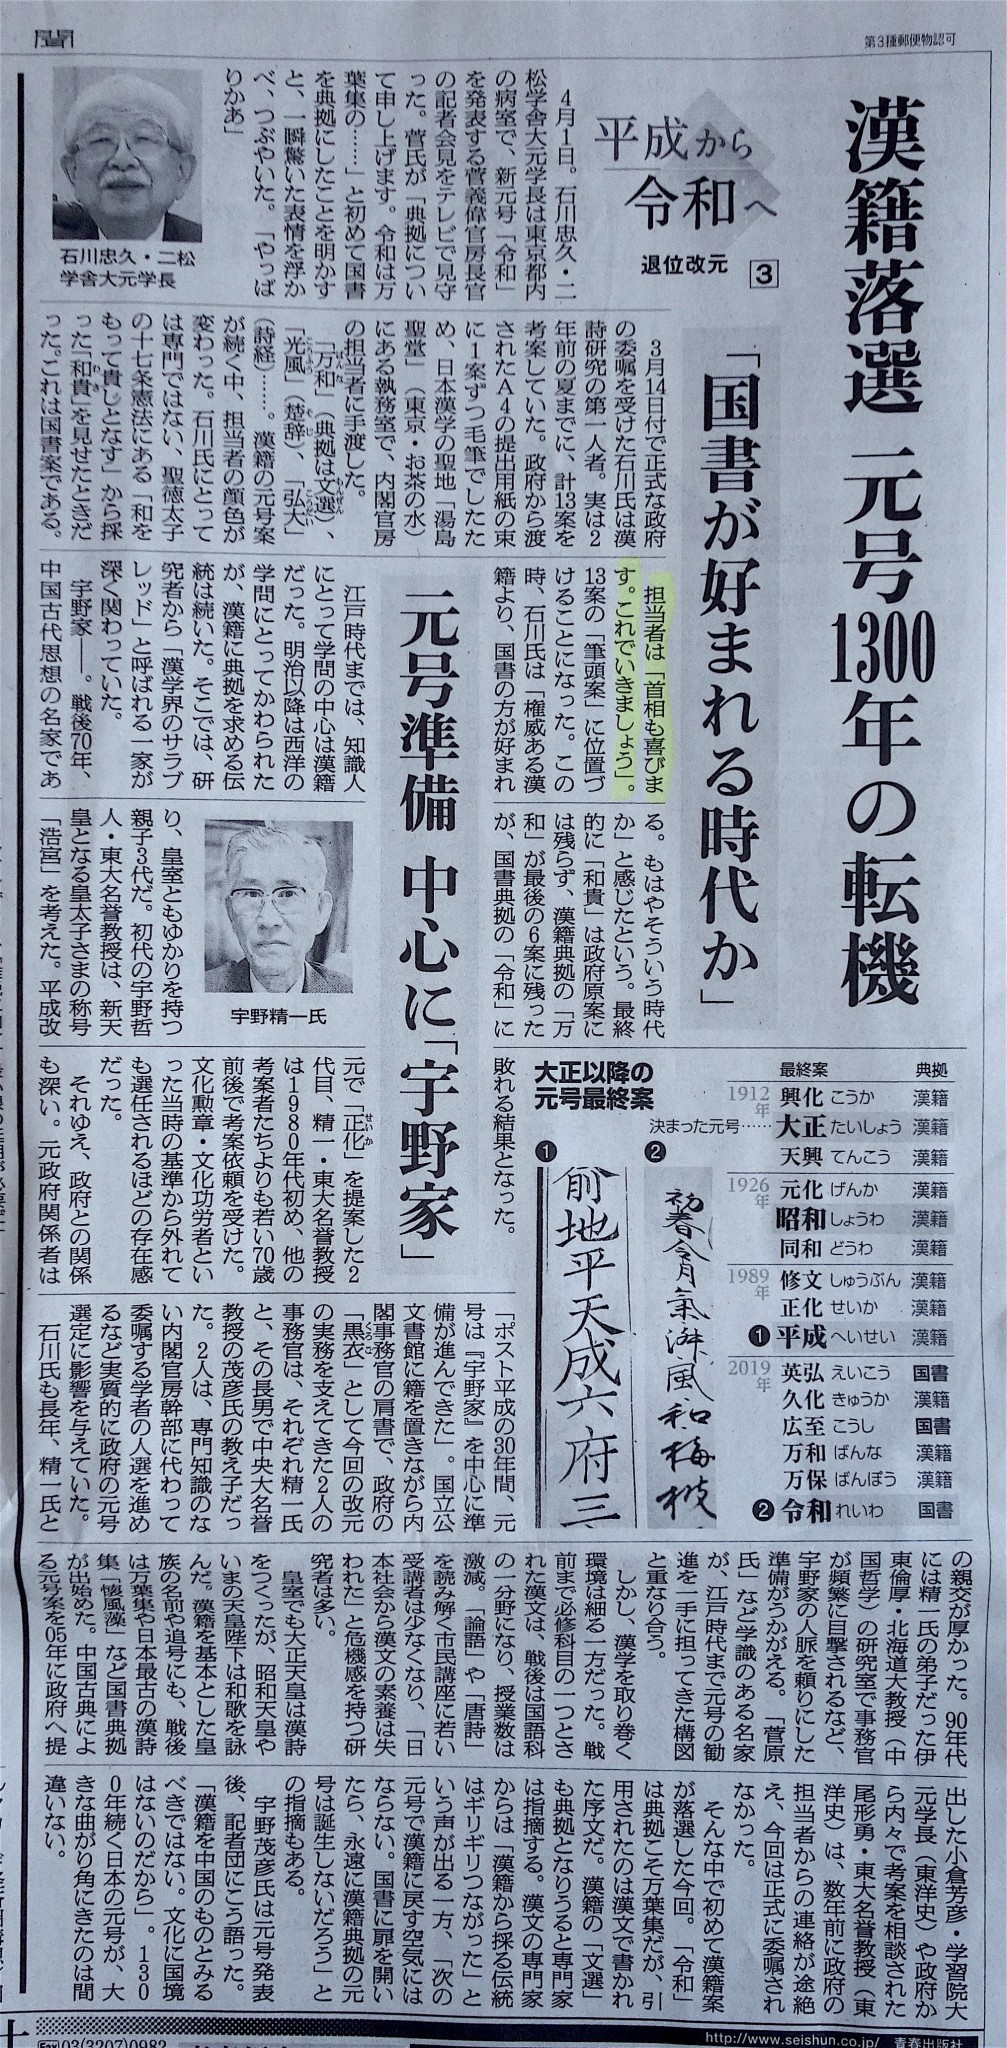 新元号令和。担当者は「首相も喜びます。これでいきましょう」朝日新聞、平成31年4月4日